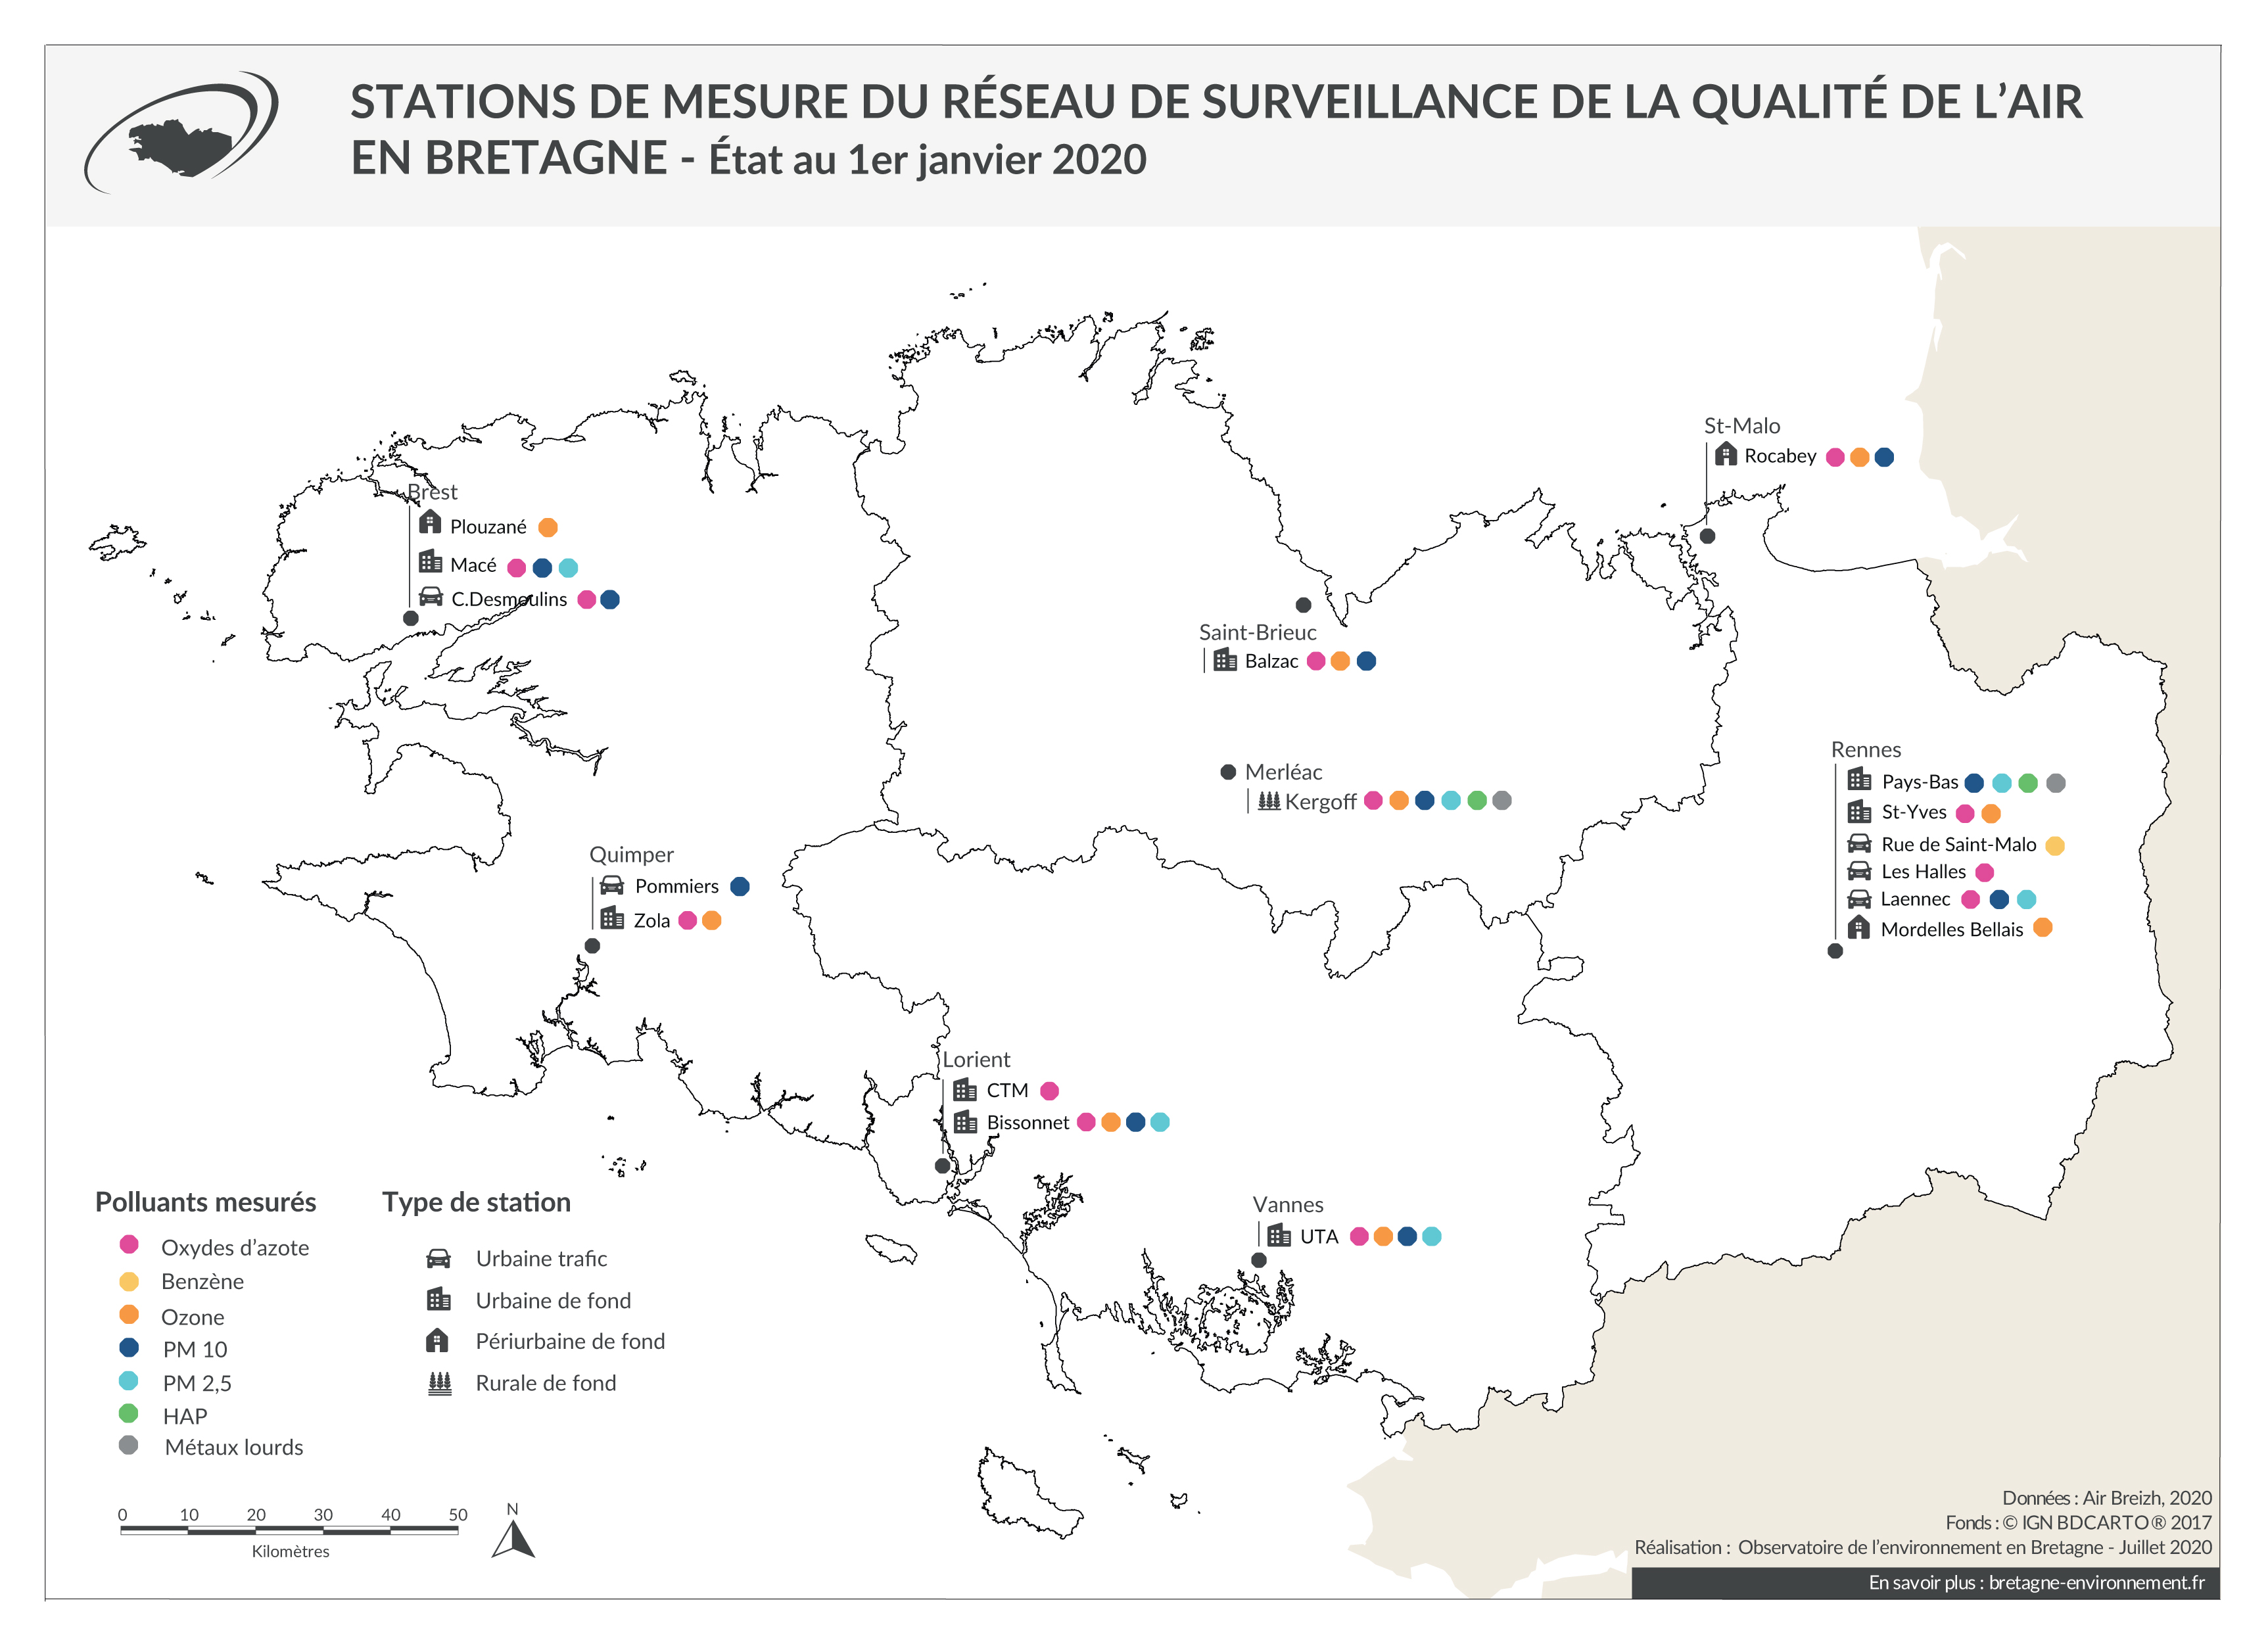 Stations de mesure du réseau de surveillance de l'air en Bretagne - Janvier 2020